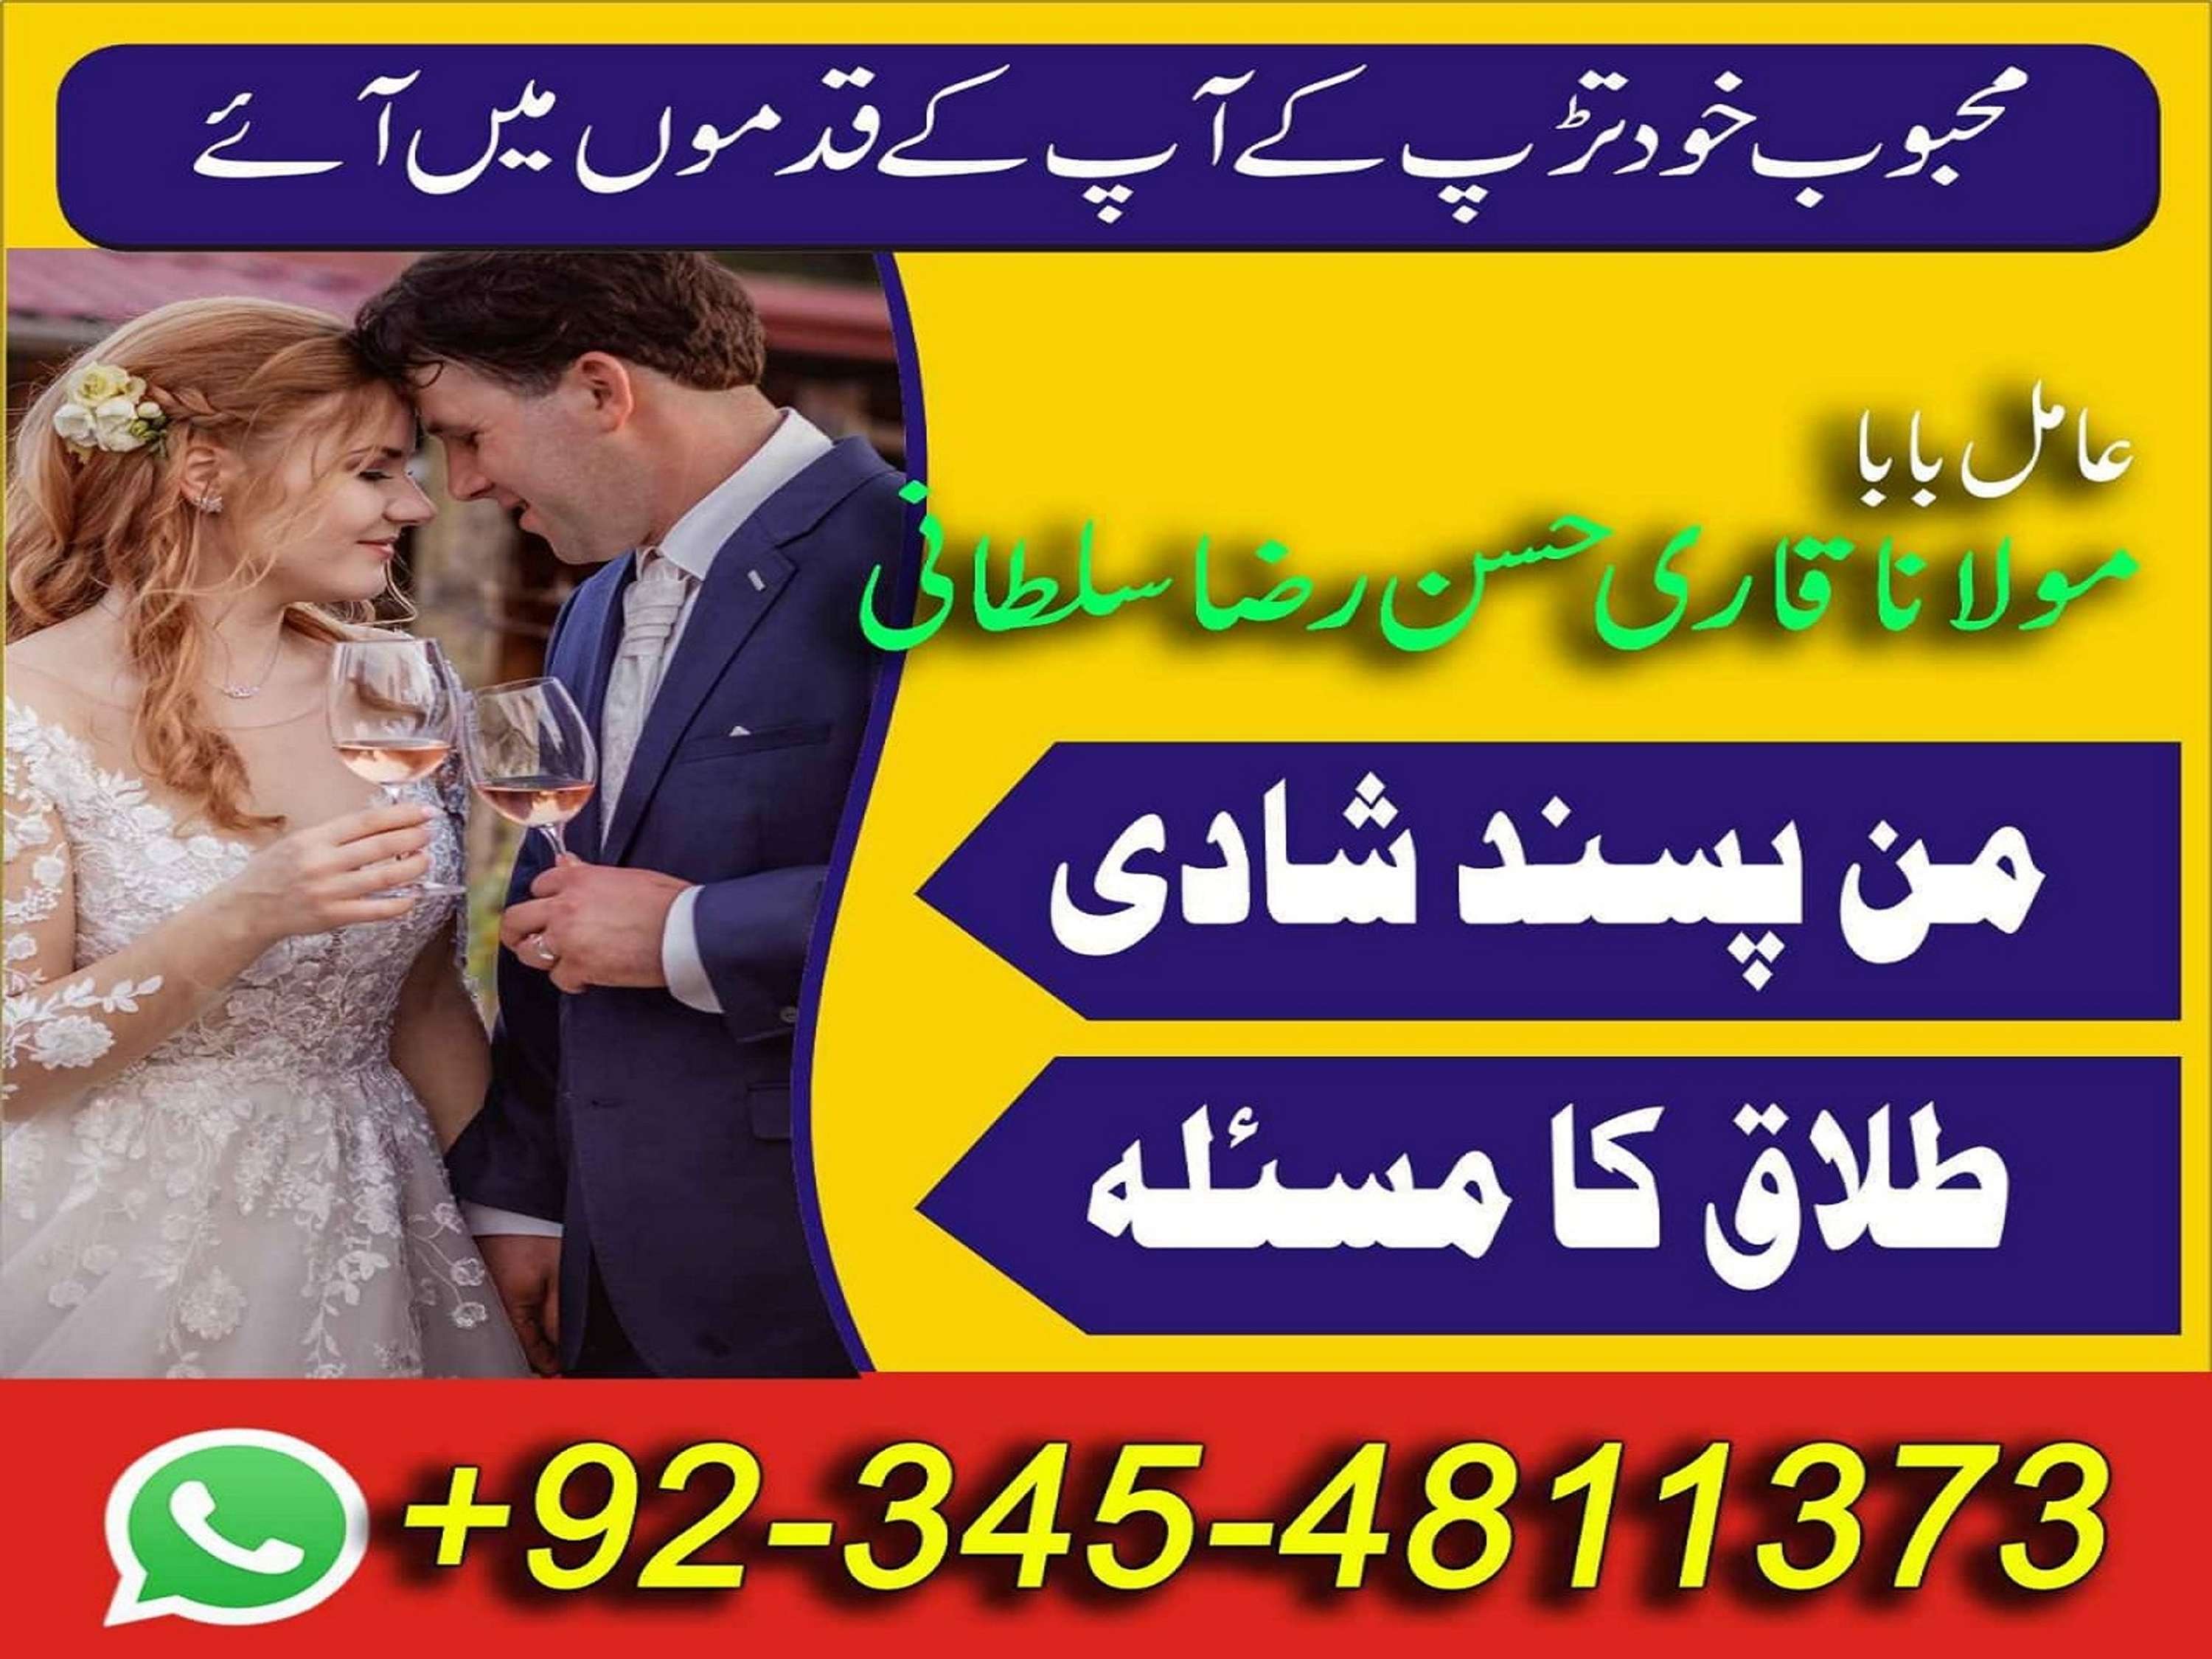 Muslim dating uk in Karachi